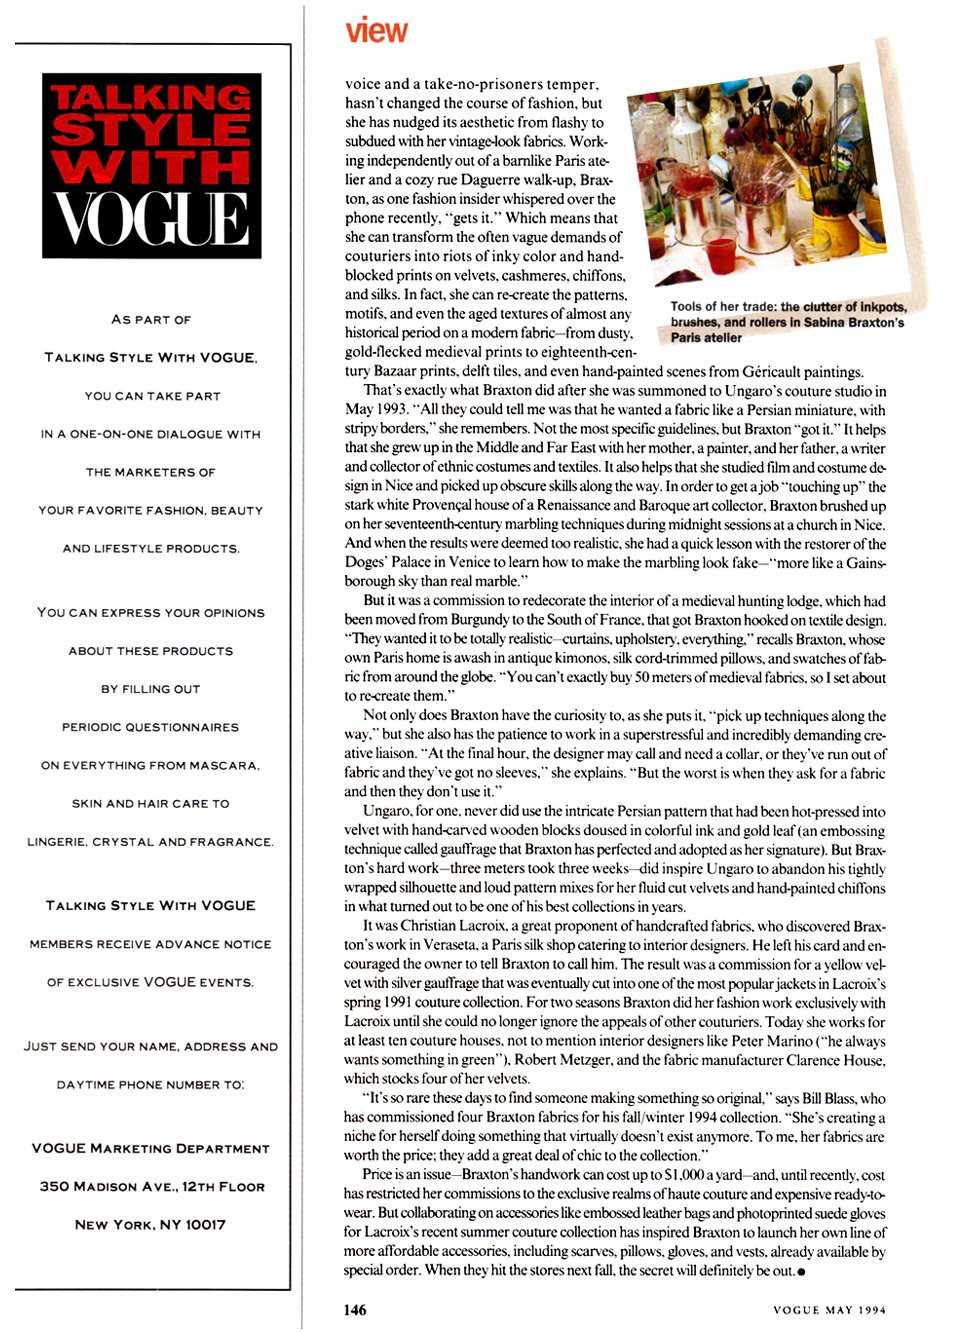 US Vogue - May 1994